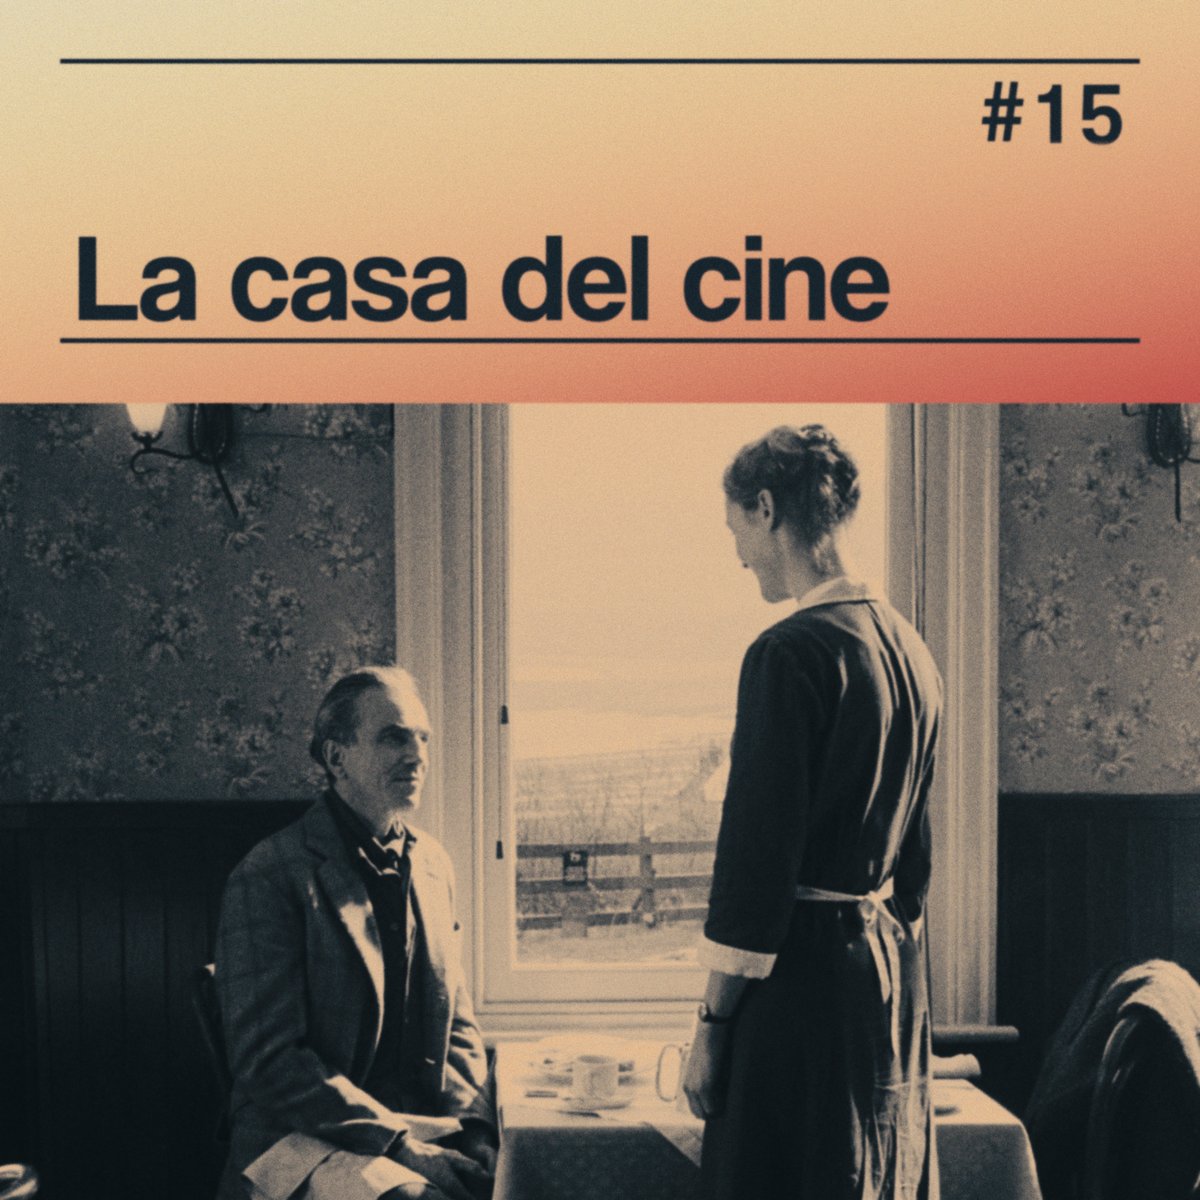 #15

¡Ya disponible el nuevo capítulo!

#Cine #Cinema #Phantomthread #Cannes 

¡Disponible en @Spotify, @ApplePodcasts y @YouTube! (rb.gy/njn1sa)